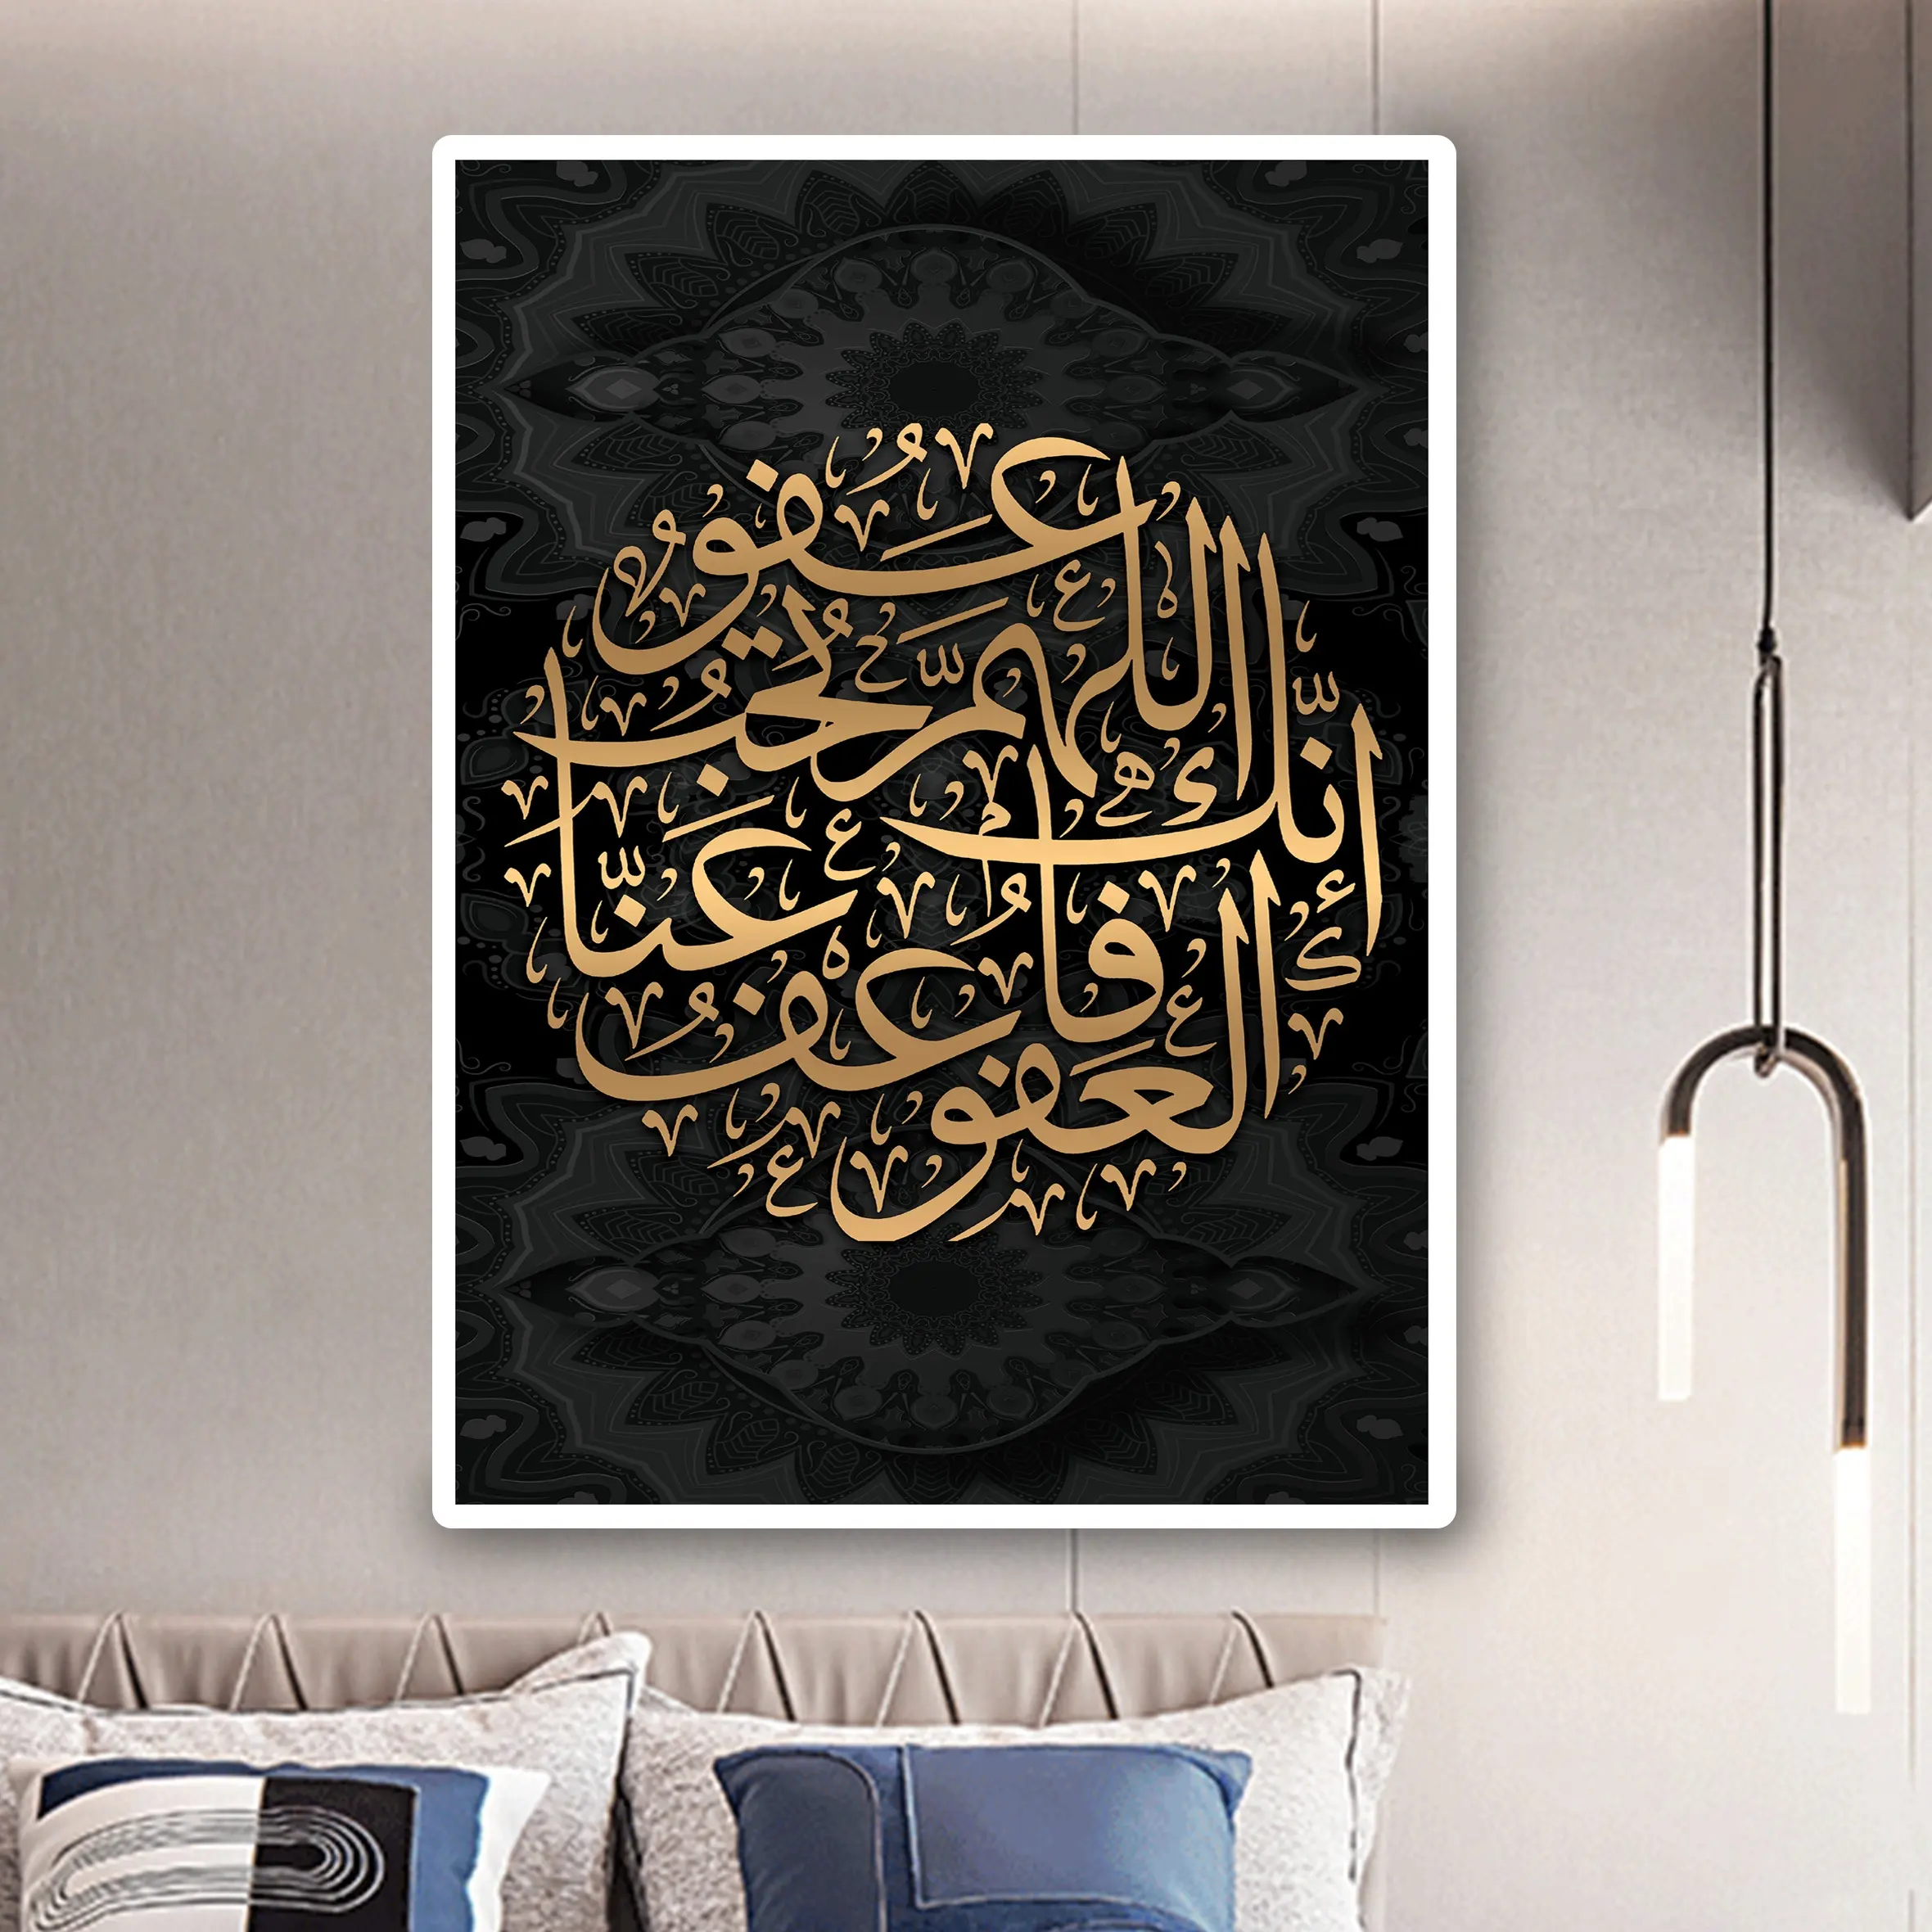 Sevgilim kuran kaligrafi resim tuvali boyama porselen kristal boyama müslüman islam duvar ev dekorasyon için sanat dekoru